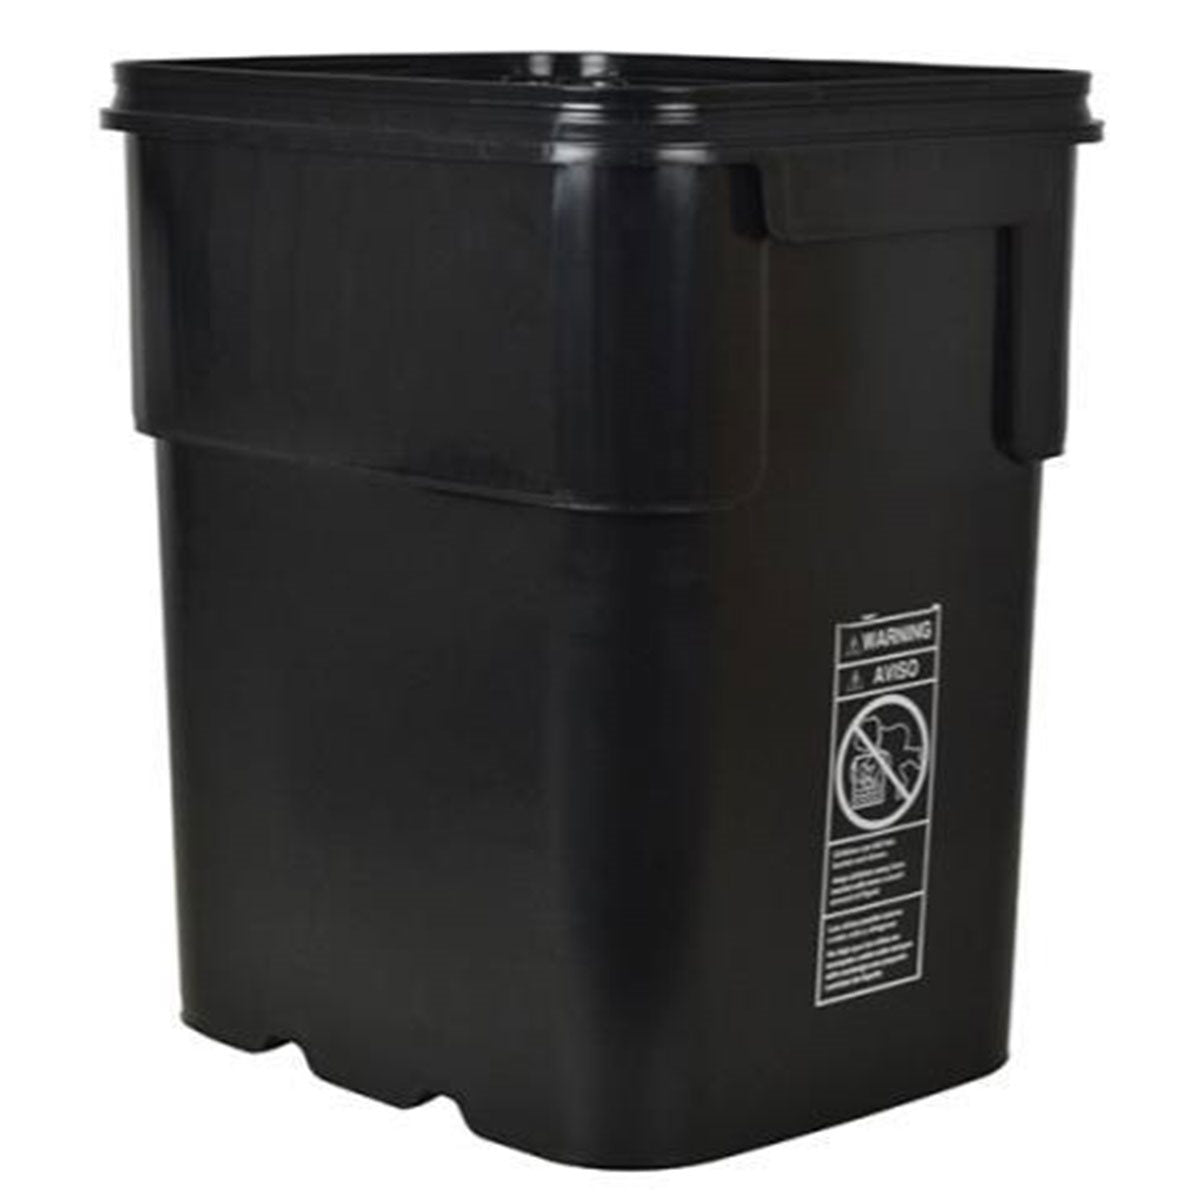 Product Image:Seau noir carré 13 gallons